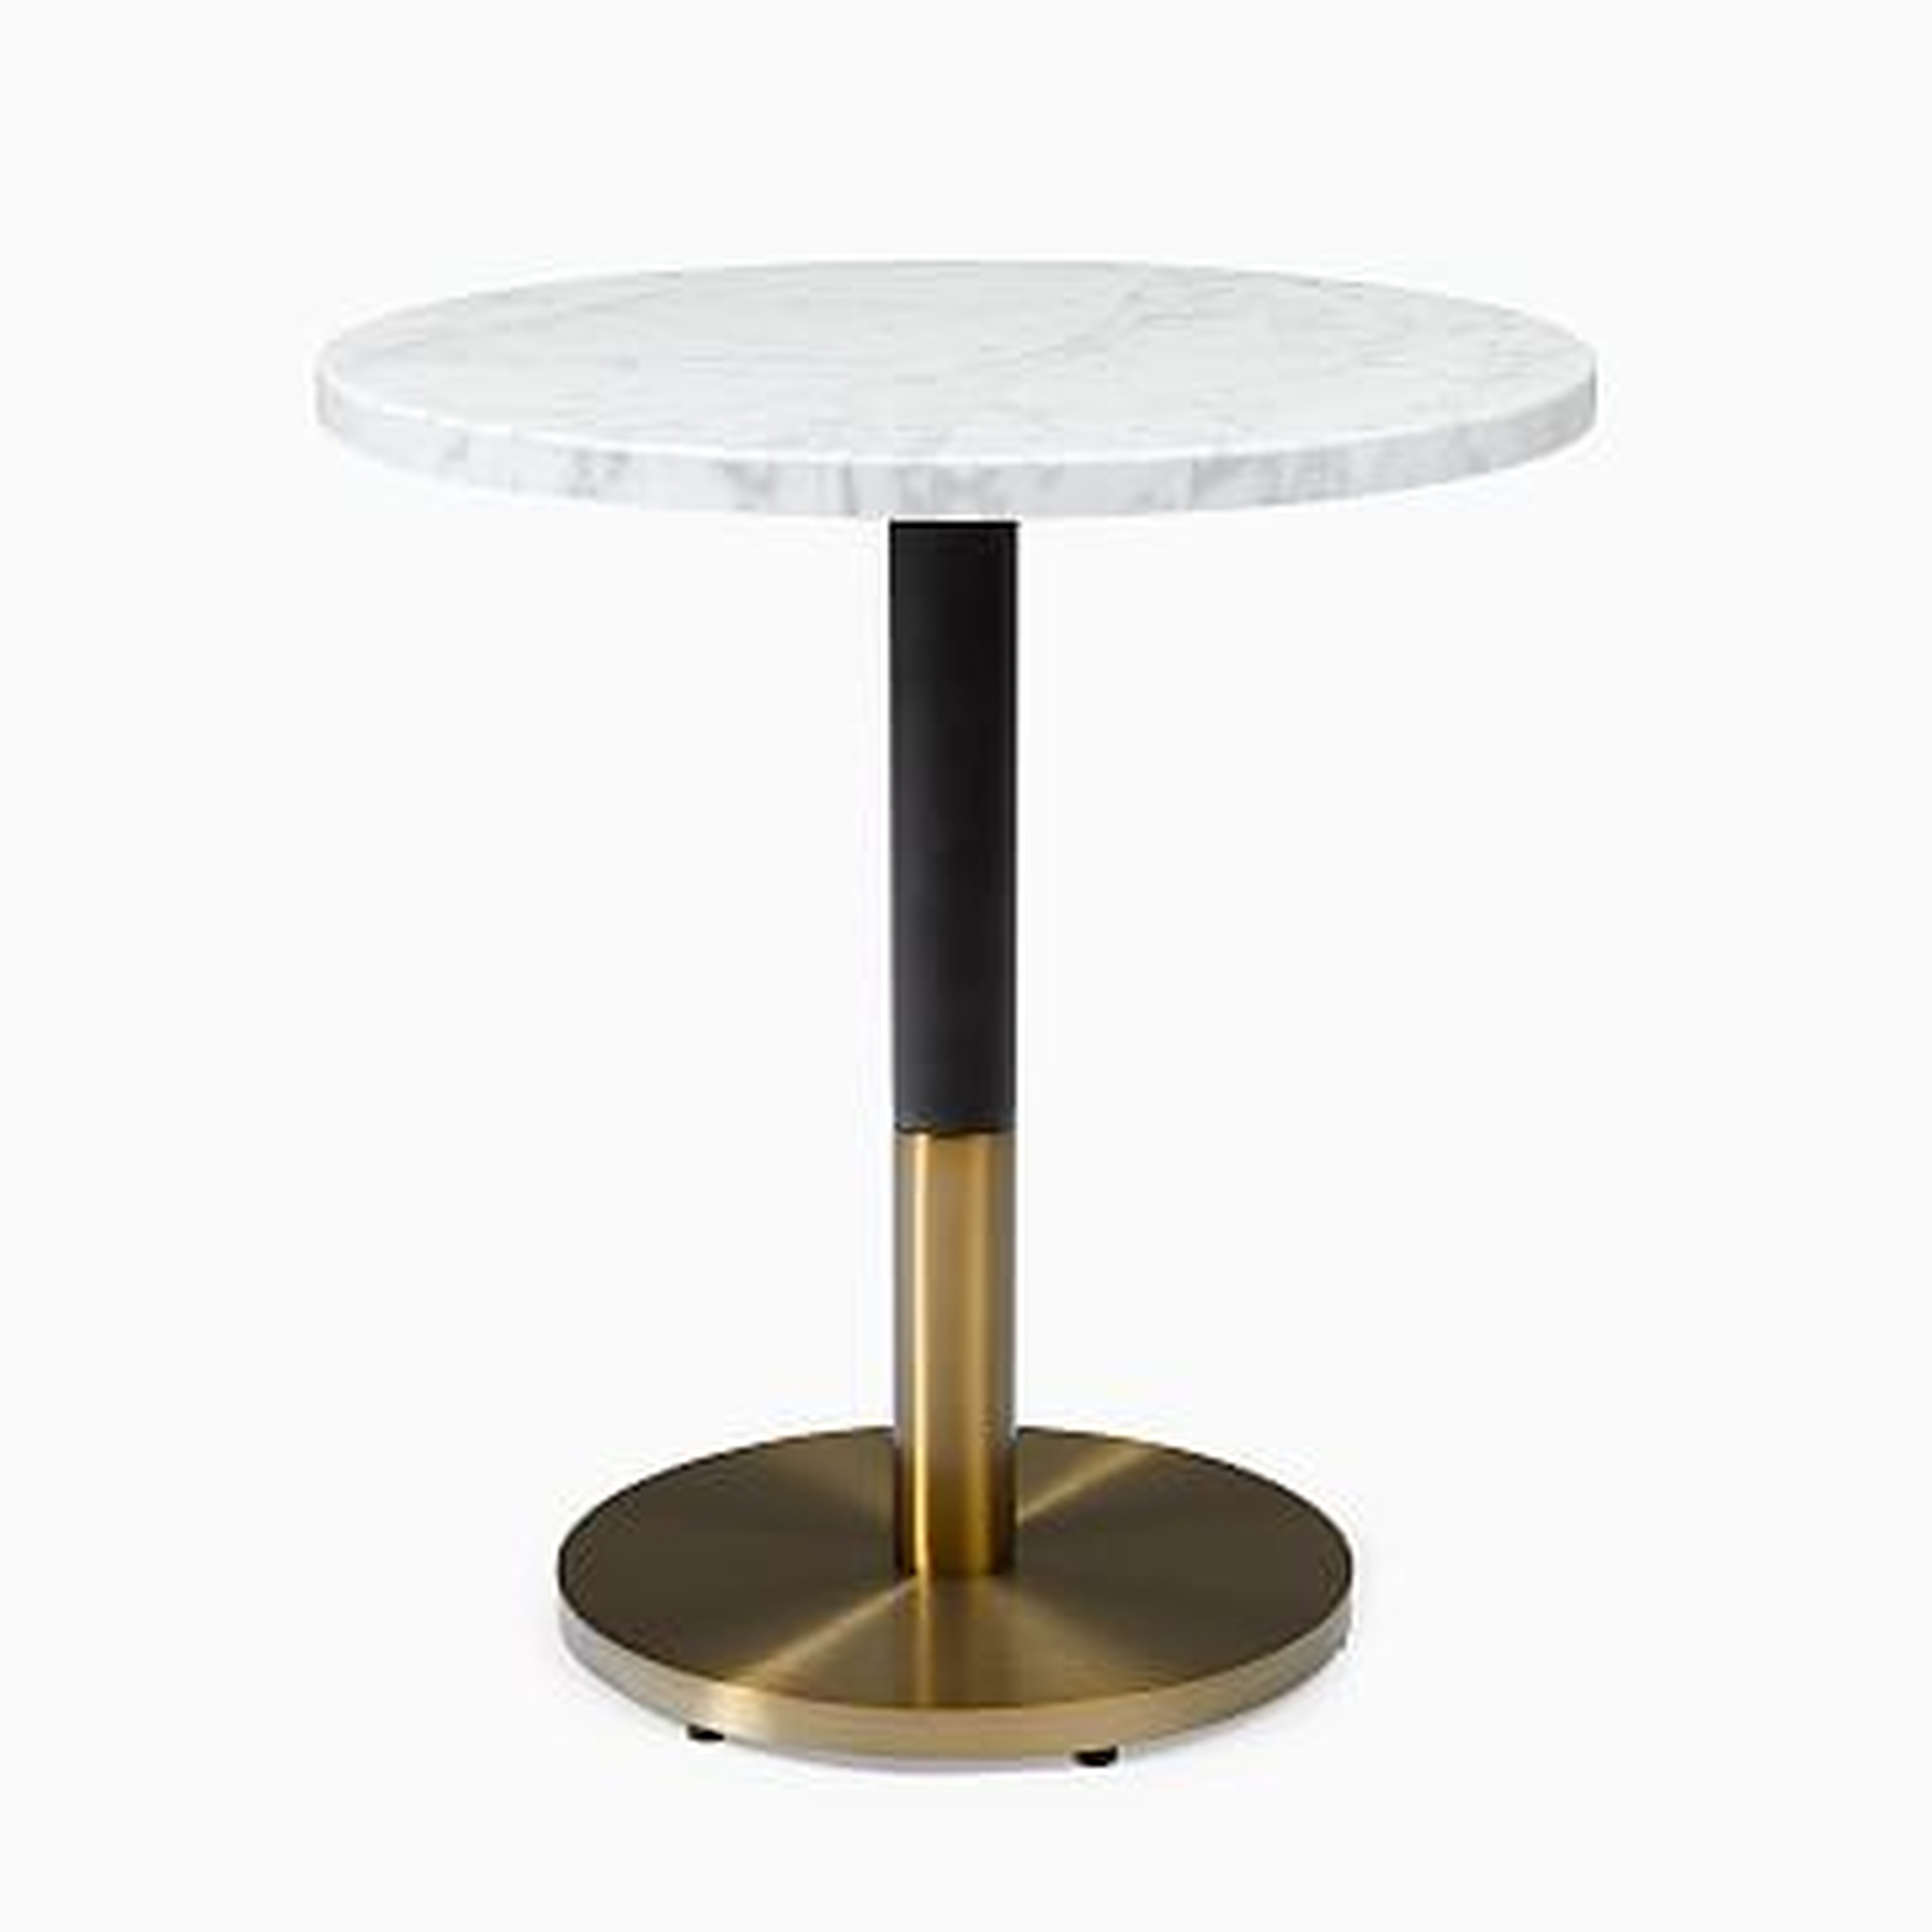 White Marble Round Bistro Table, 24", Orbit Dining, Brass - West Elm